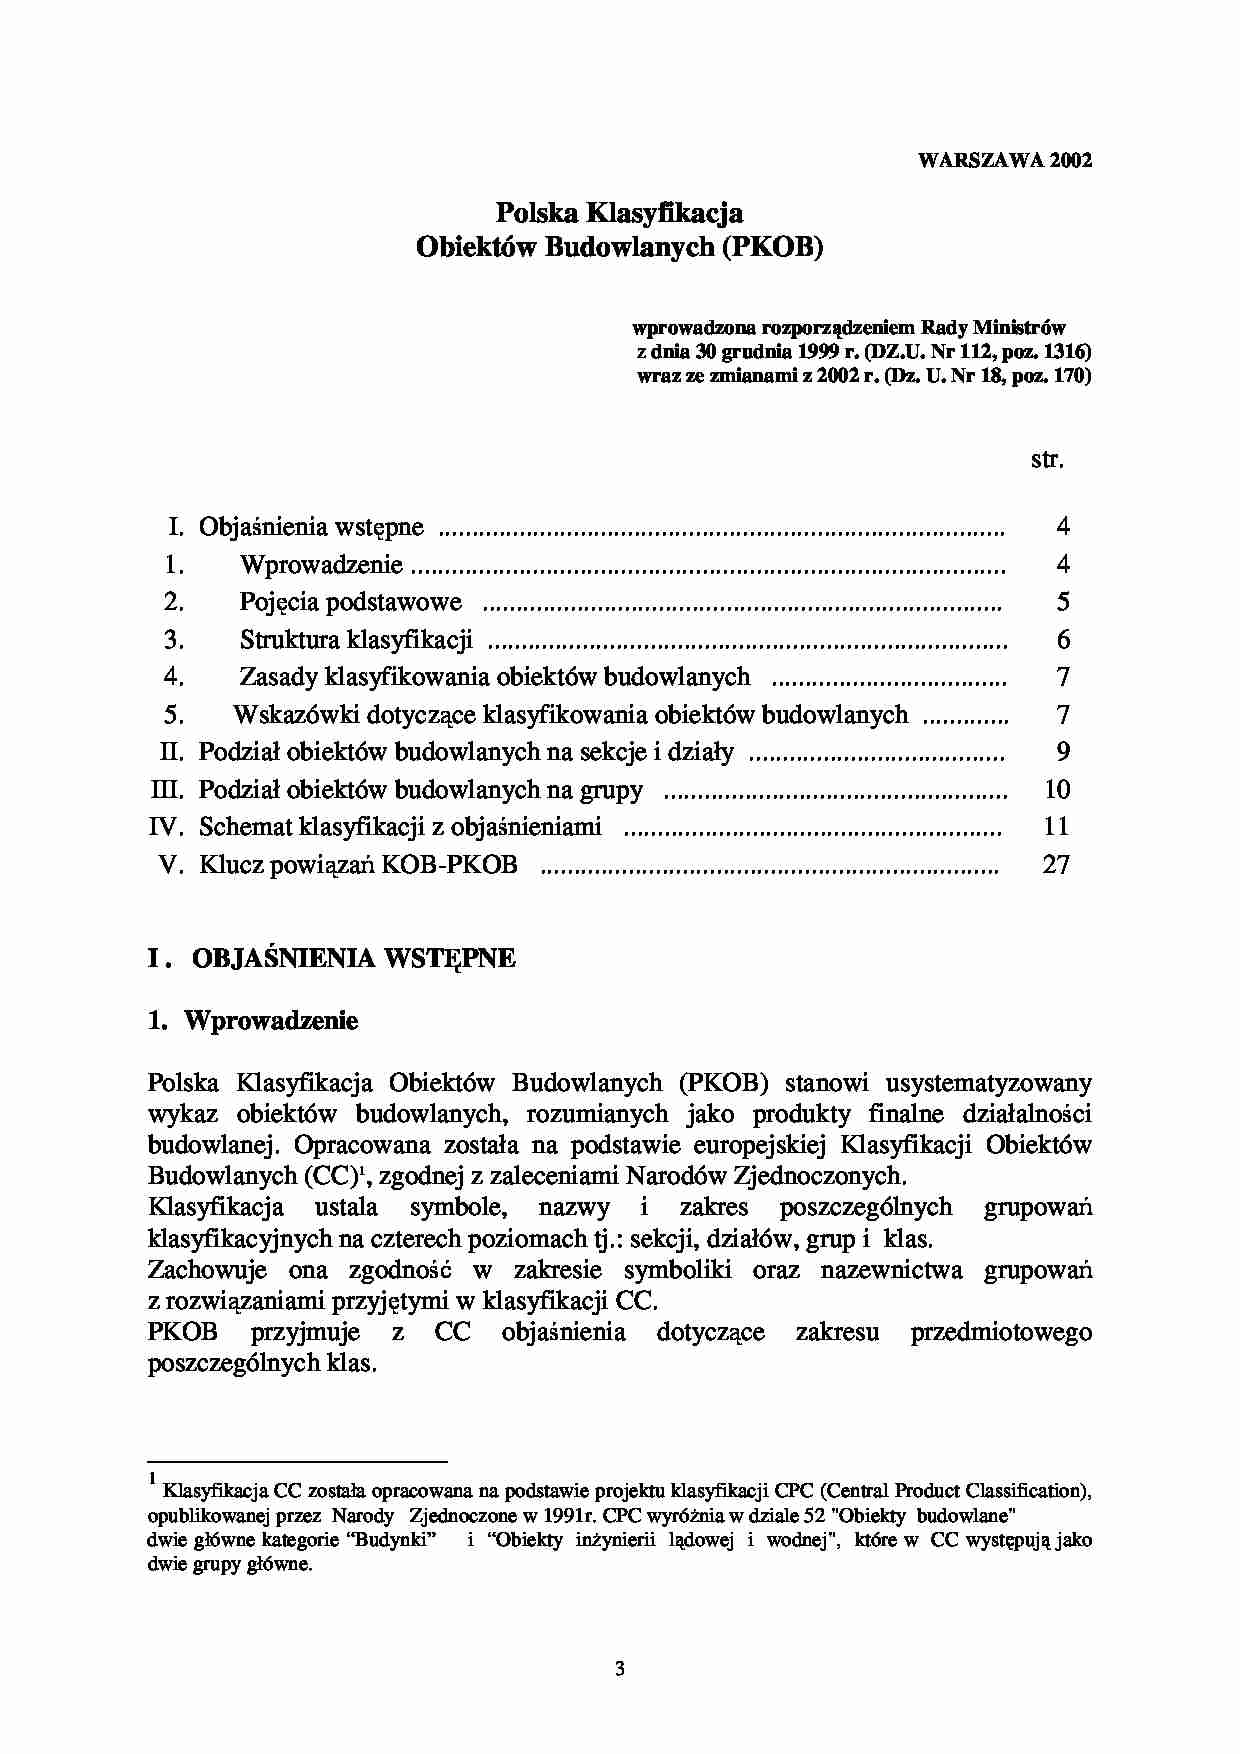 Polska Klasyfikacja Obiektów Budowlanych (PKOB) - strona 1